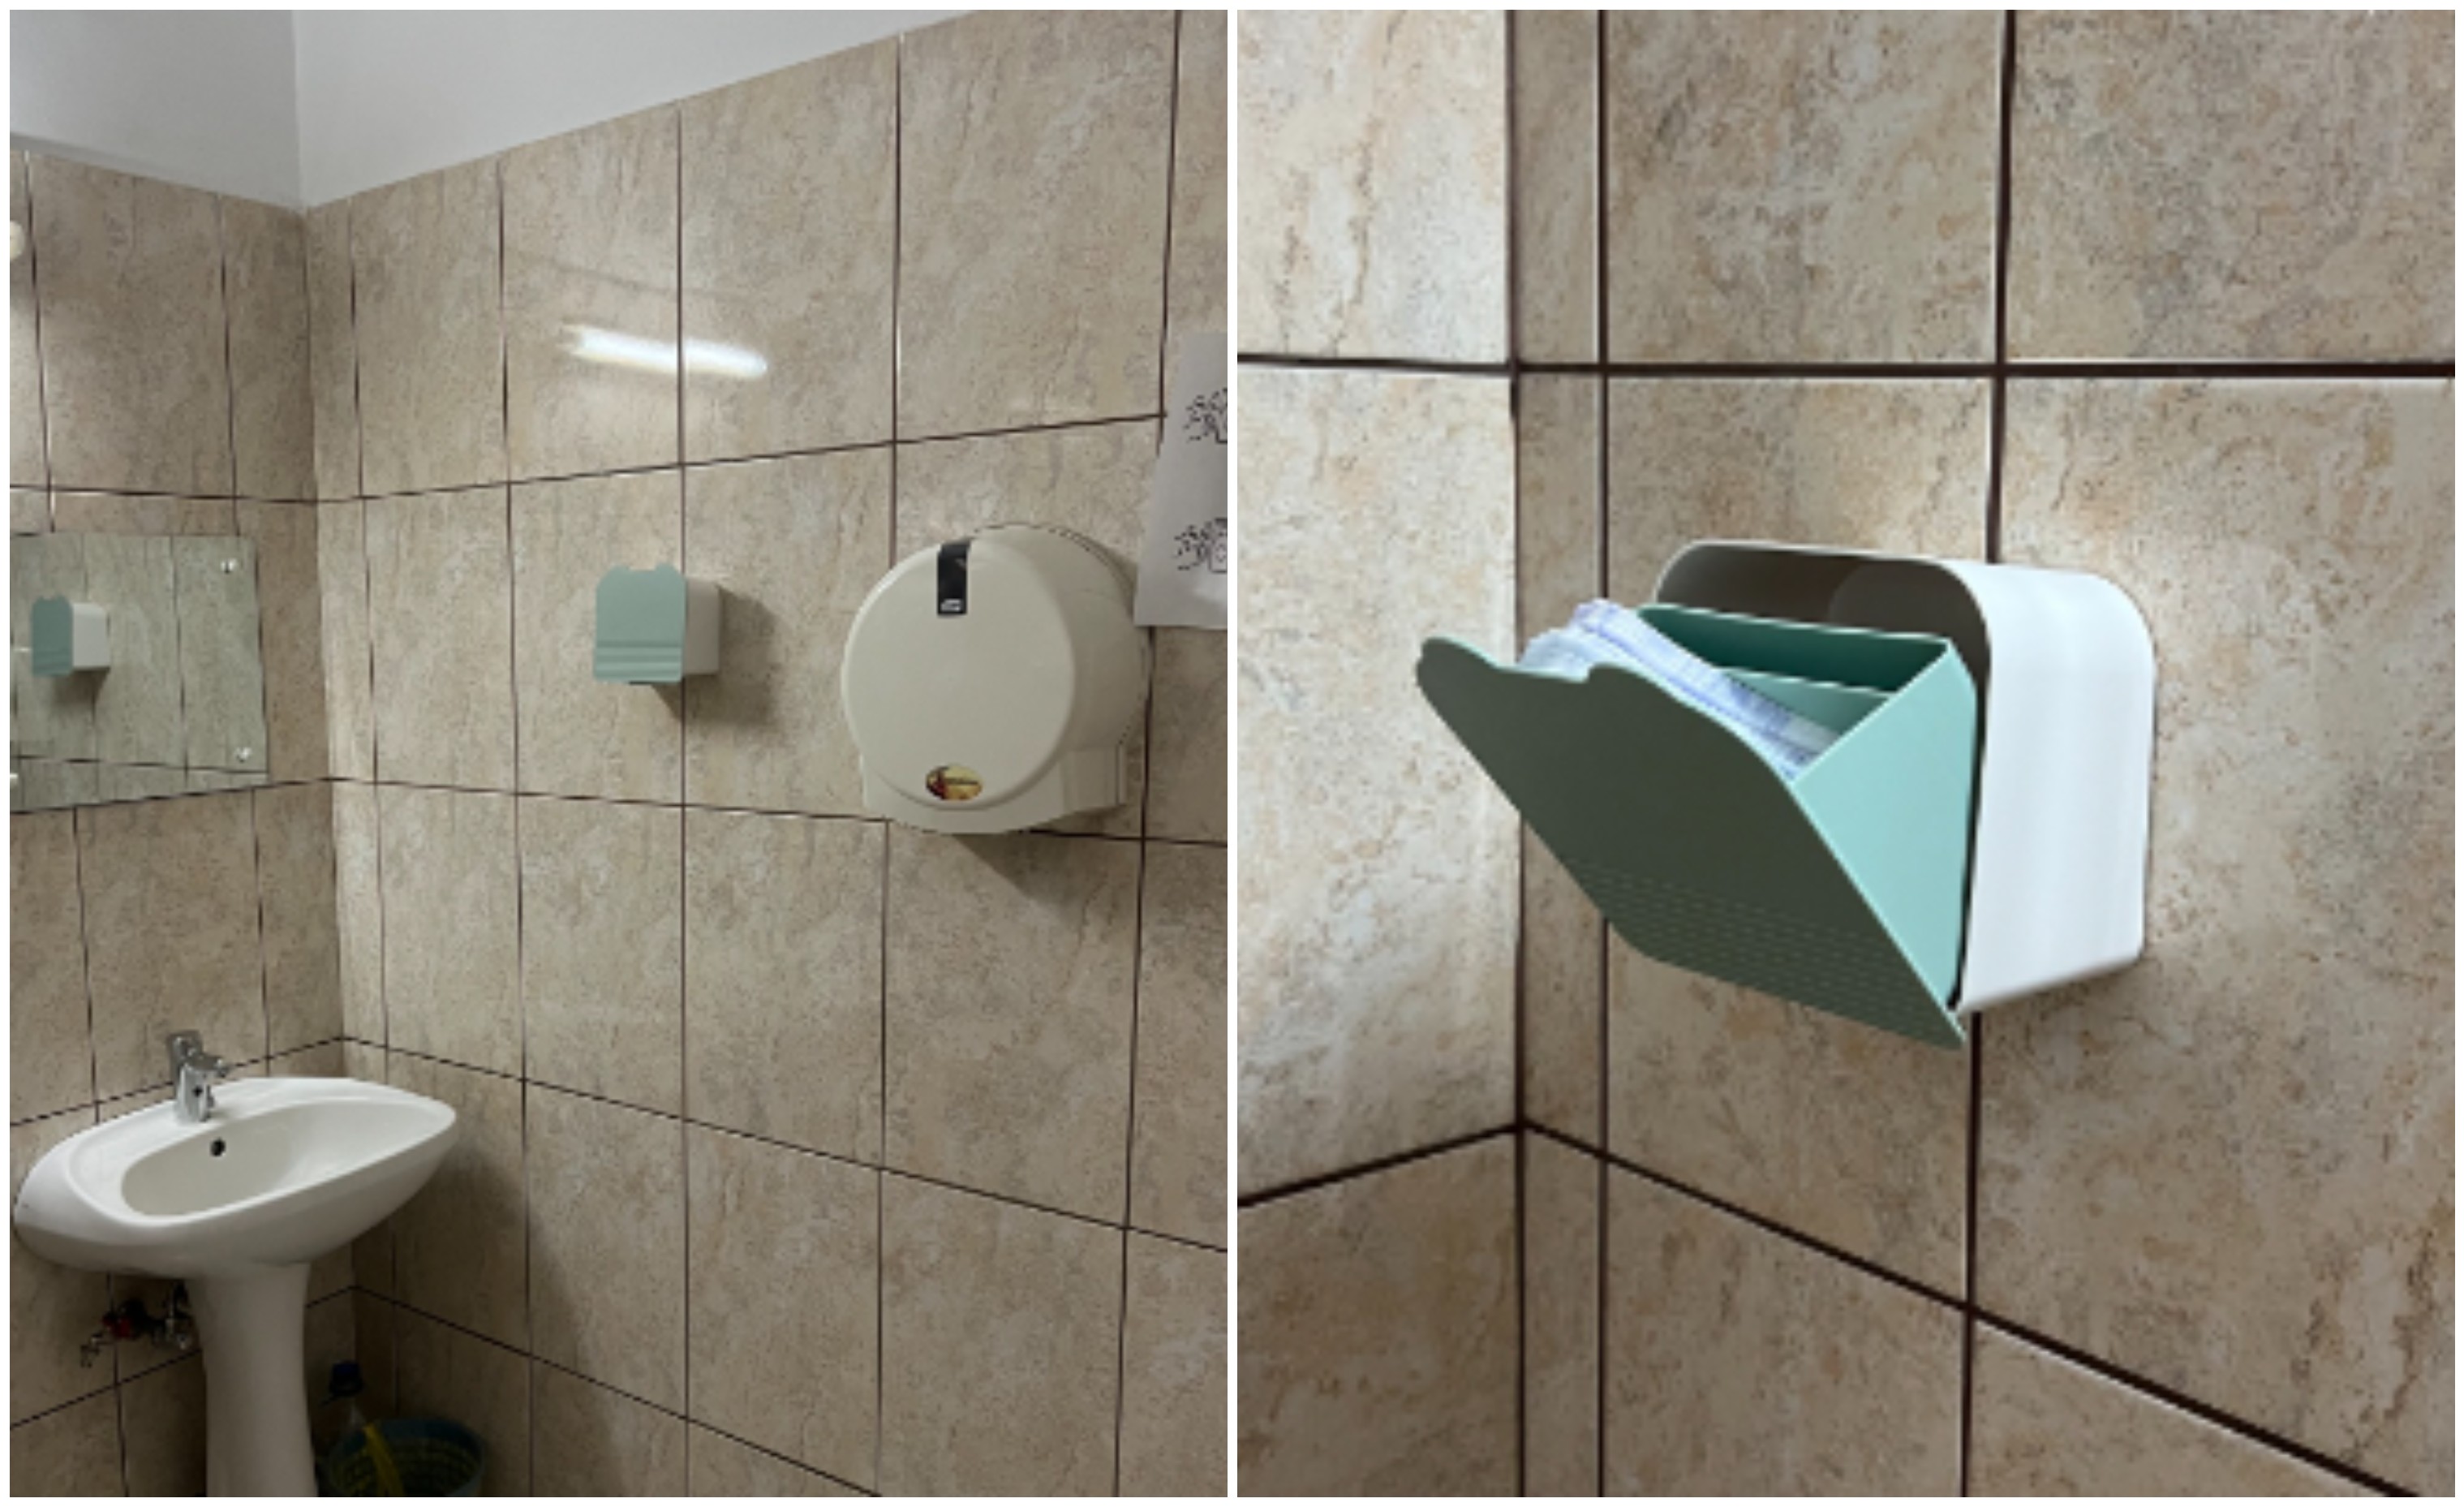 Dispensere cu absorbante gratuite pentru situații de urgență, instalate în toaletele unei facultăți din Cluj-Napoca / Foto: FSPAC - Facebook